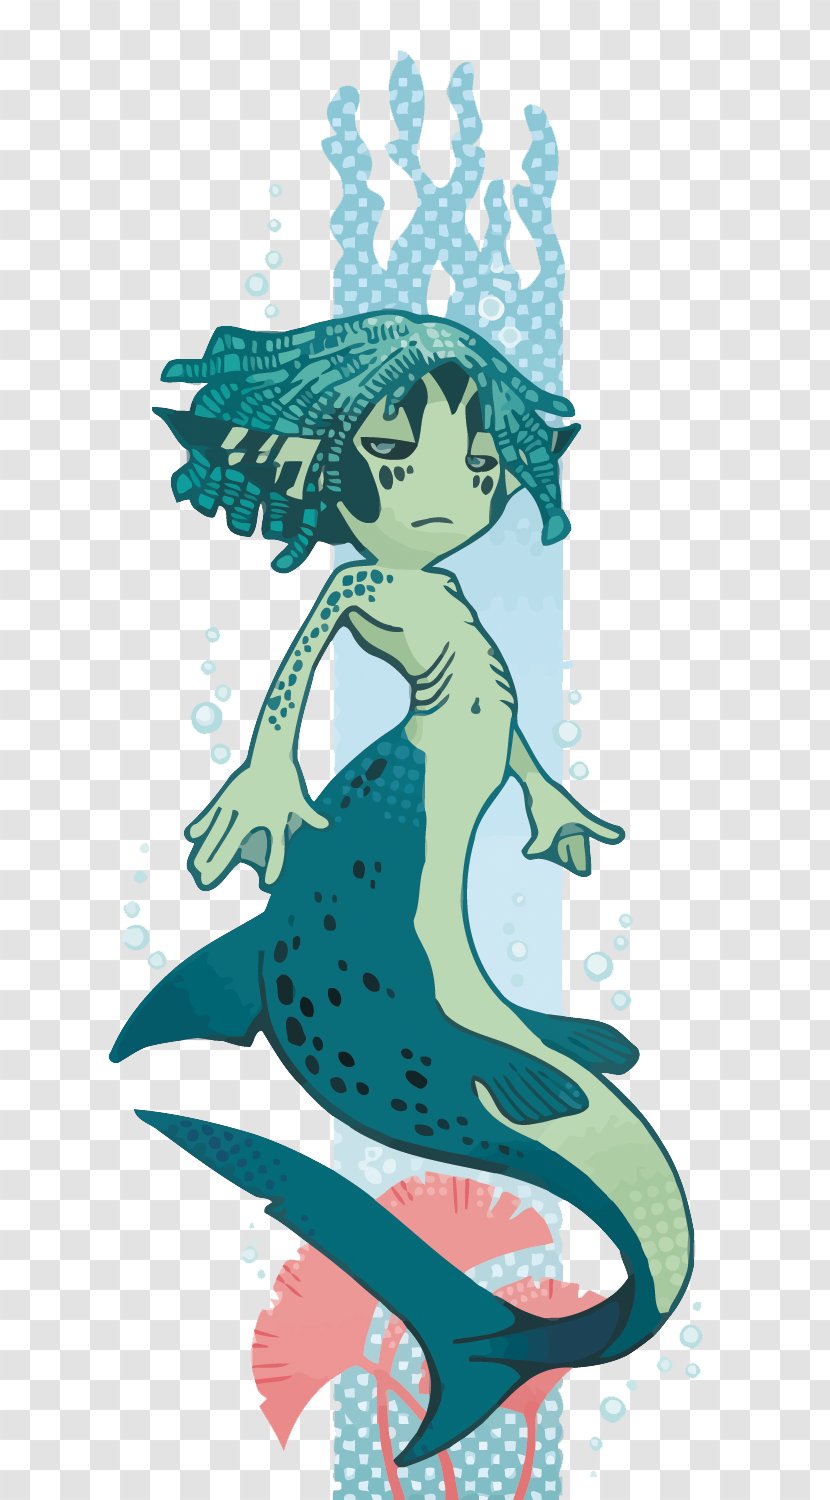 The Little Mermaid Cartoon Visual Arts Illustration - Hans Christian Andersen - Vector Shark Man Transparent PNG